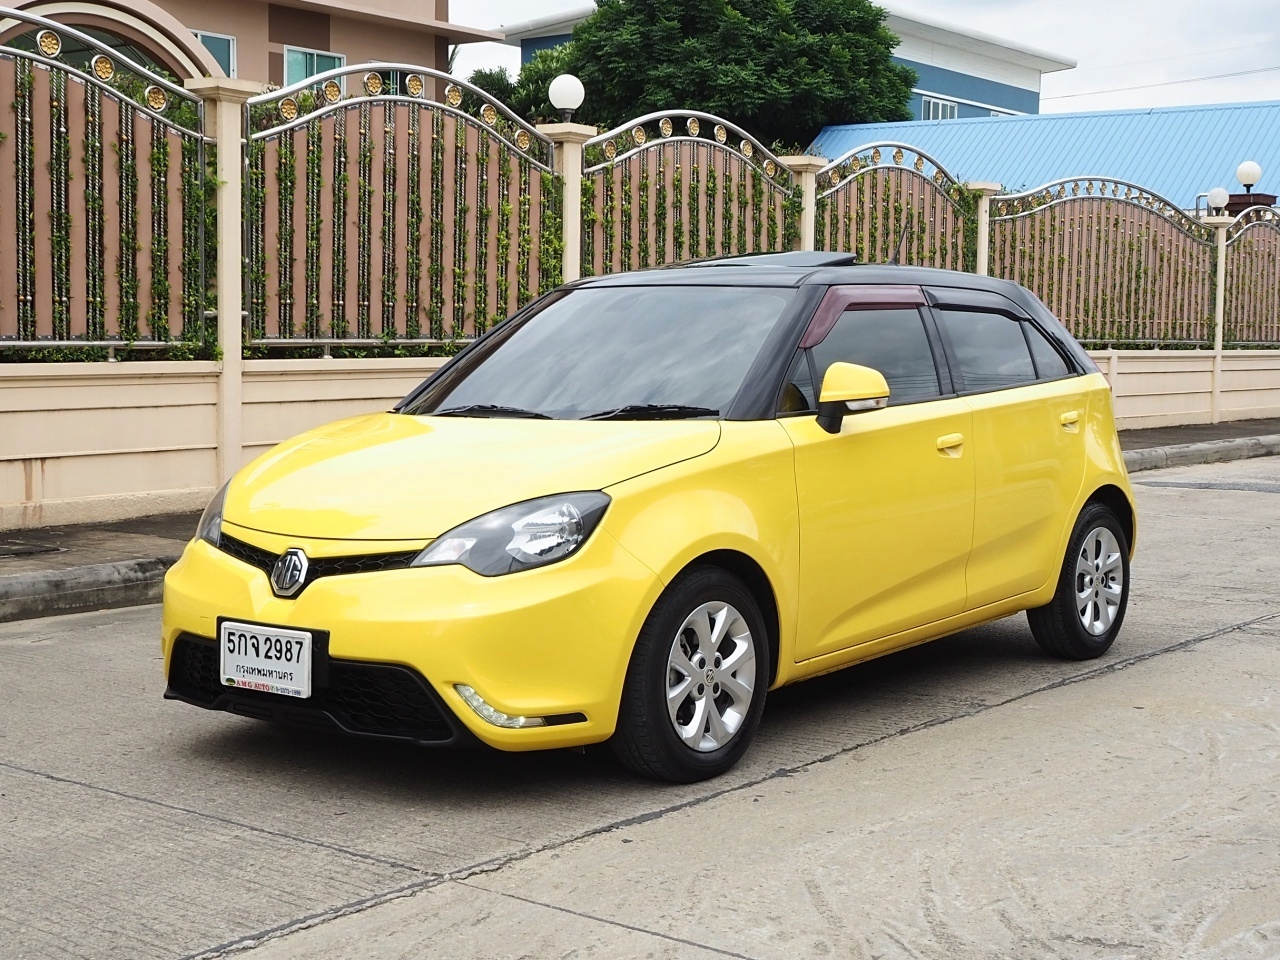 MG 3 1.5 X (Two tone) ปี 2015 จดปี 2016 สภาพนางฟ้า รถเก๋ง สีเหลือง รถมือสอง สภาพดี มีรับประกัน รูปที่ 1